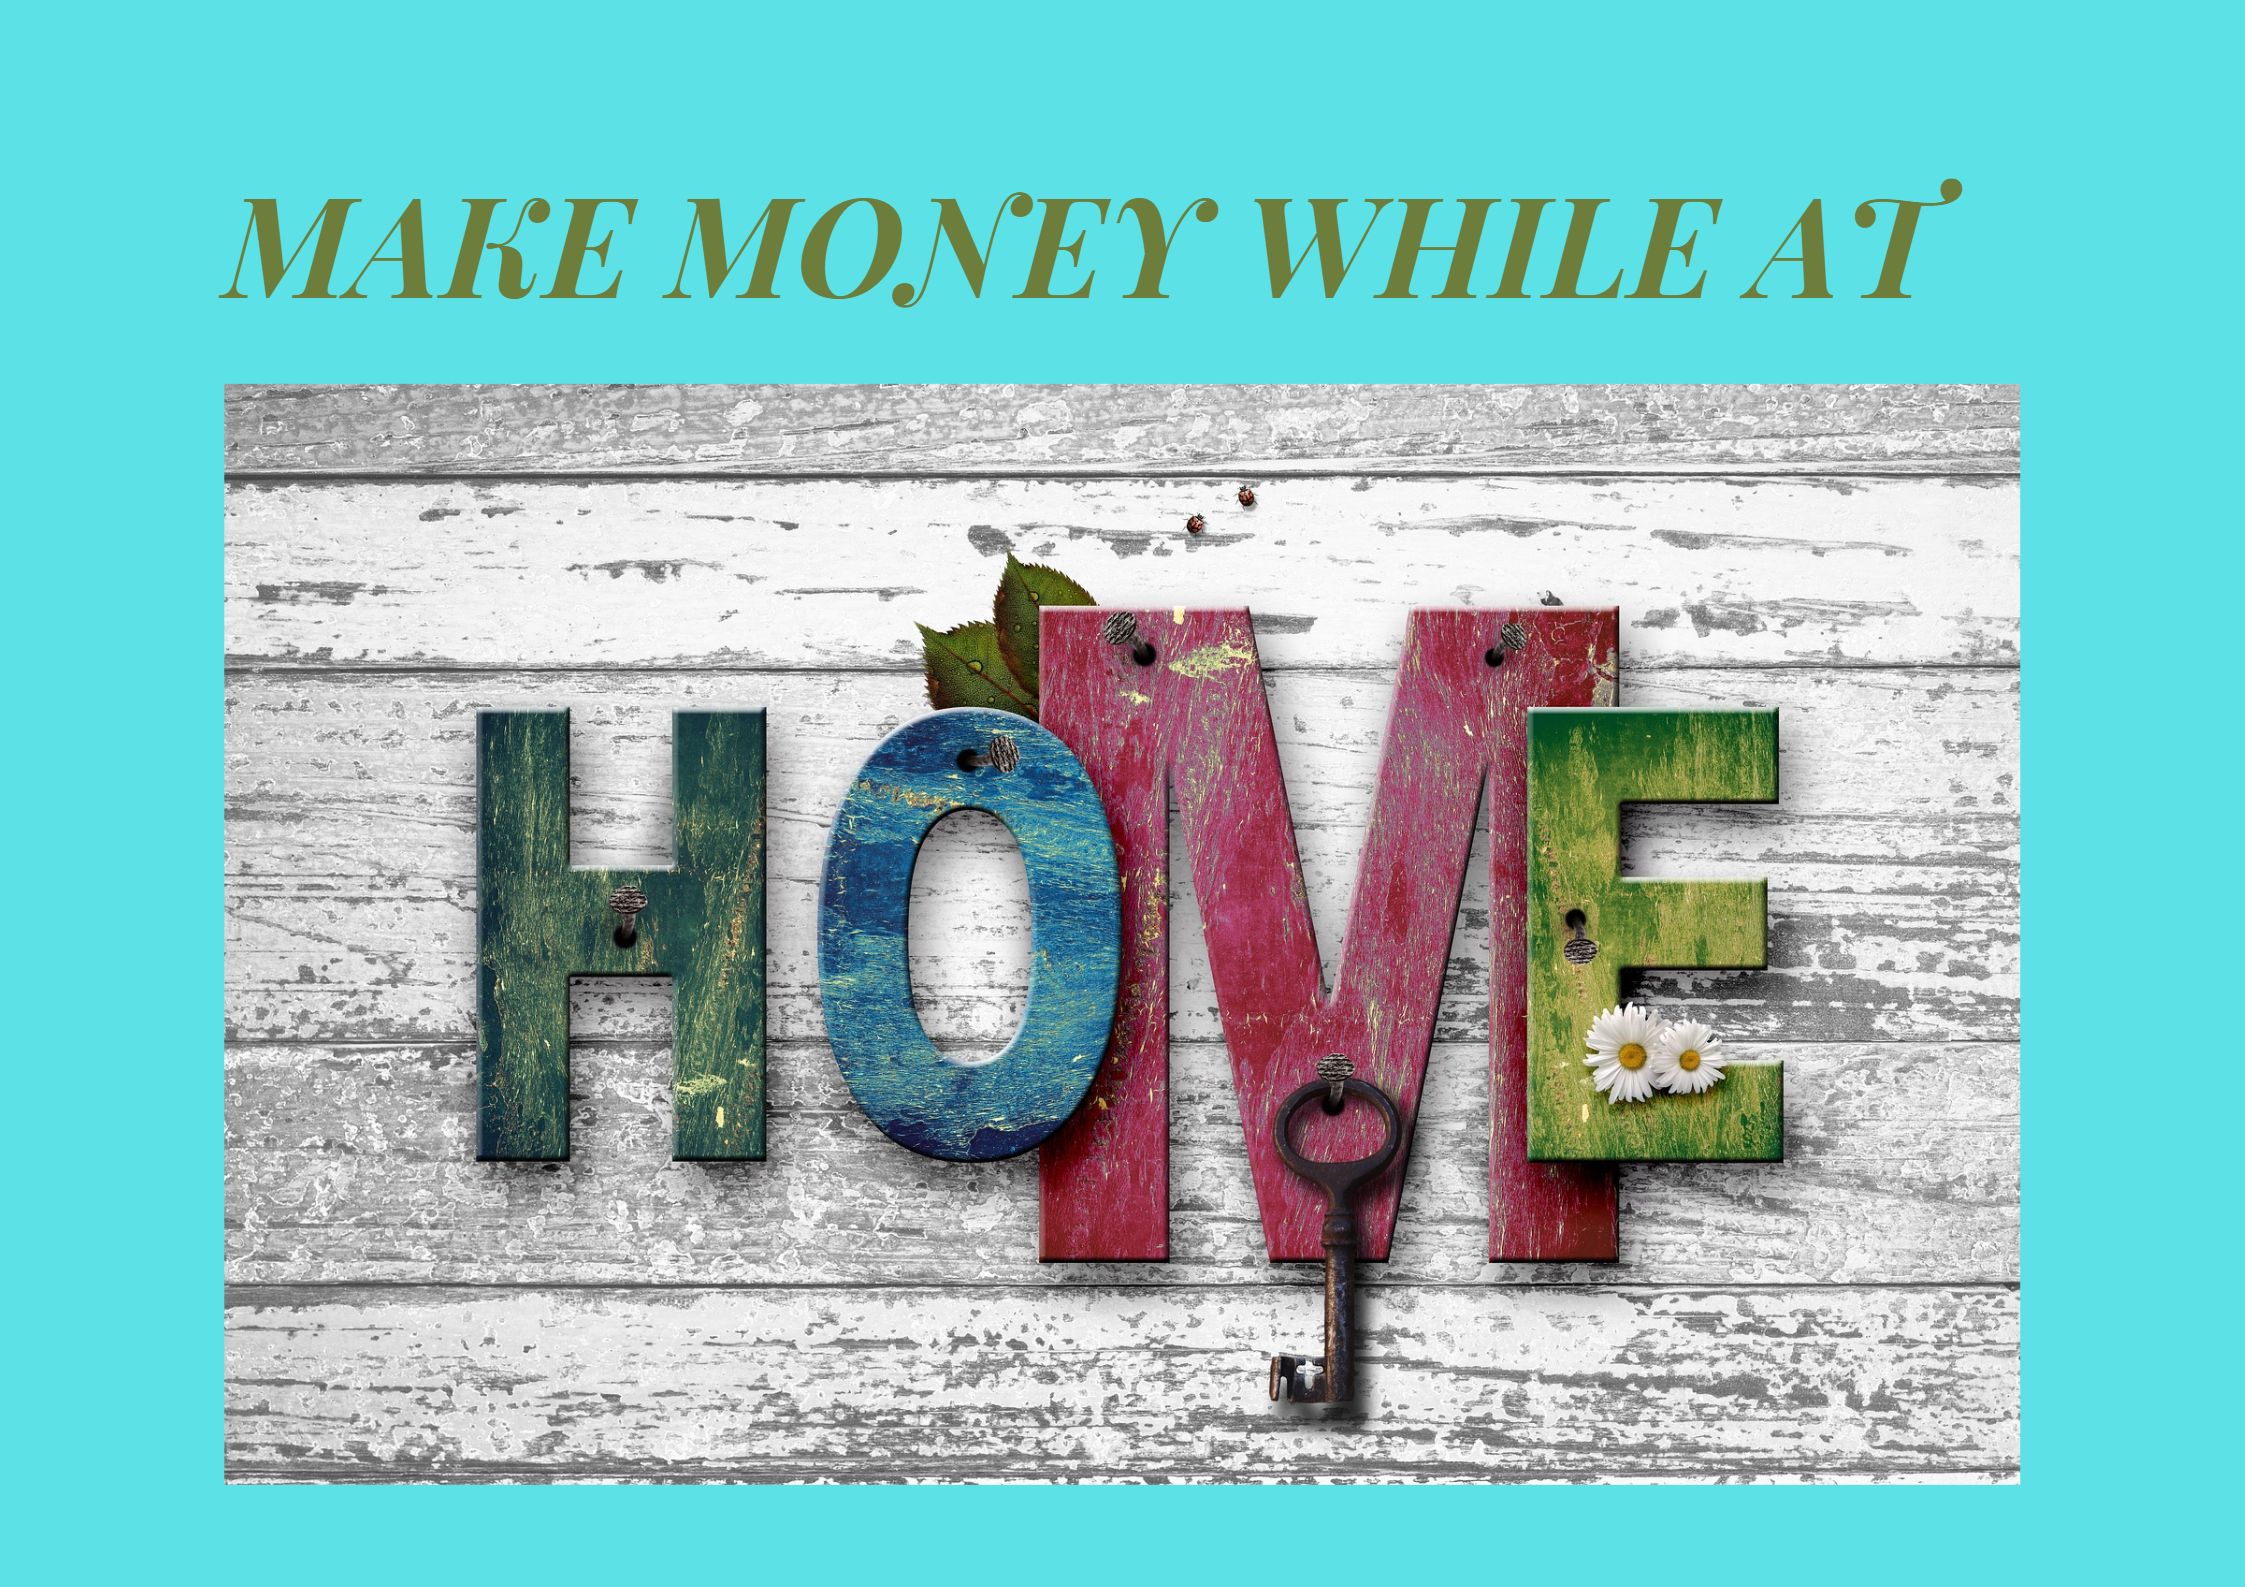 Make money while at home image